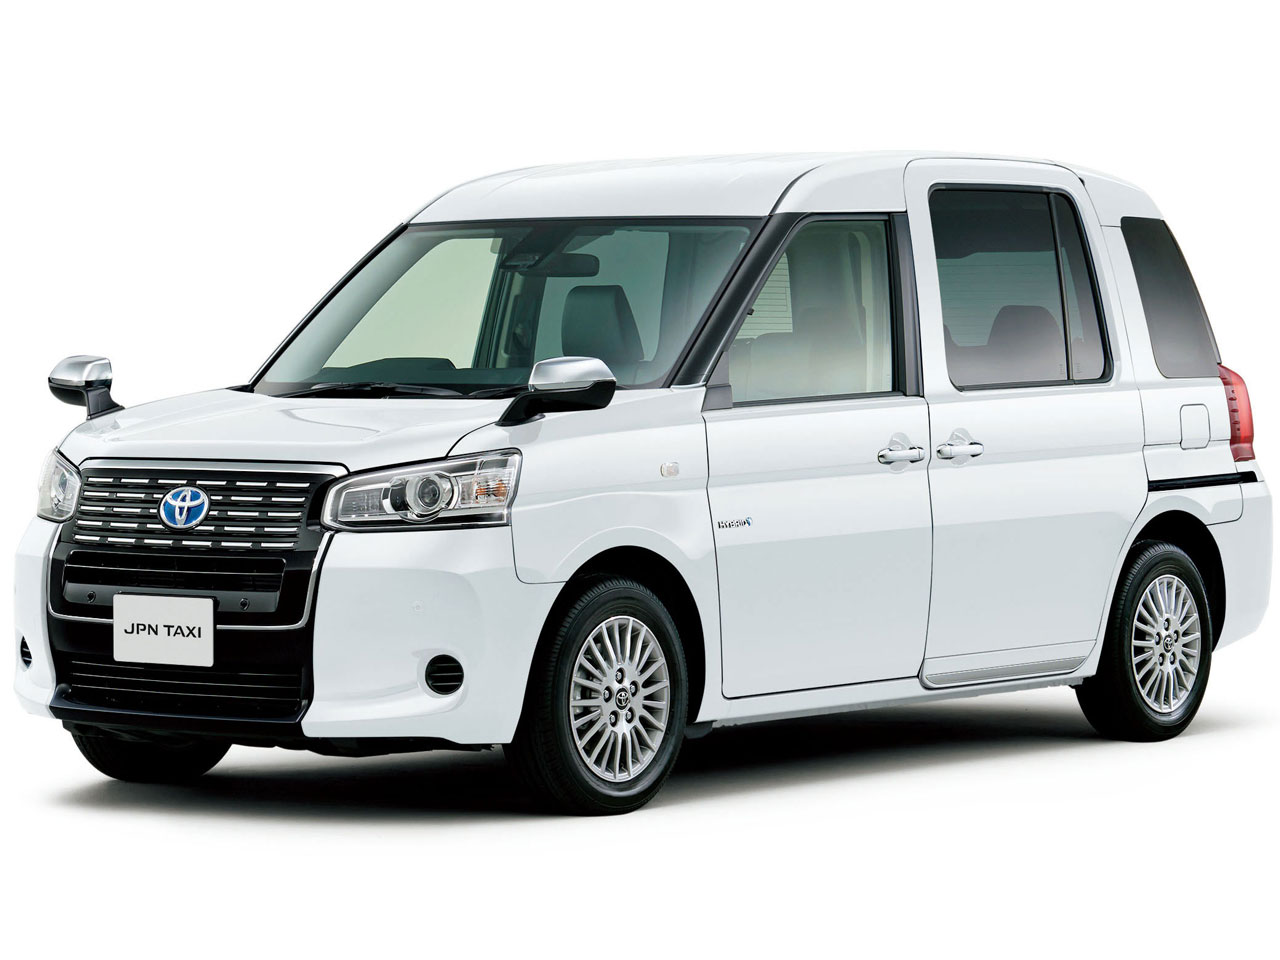 トヨタ ジャパンタクシー 商用車 17年モデル 匠の価格 性能 装備 オプション 21年5月10日発売 価格 Com